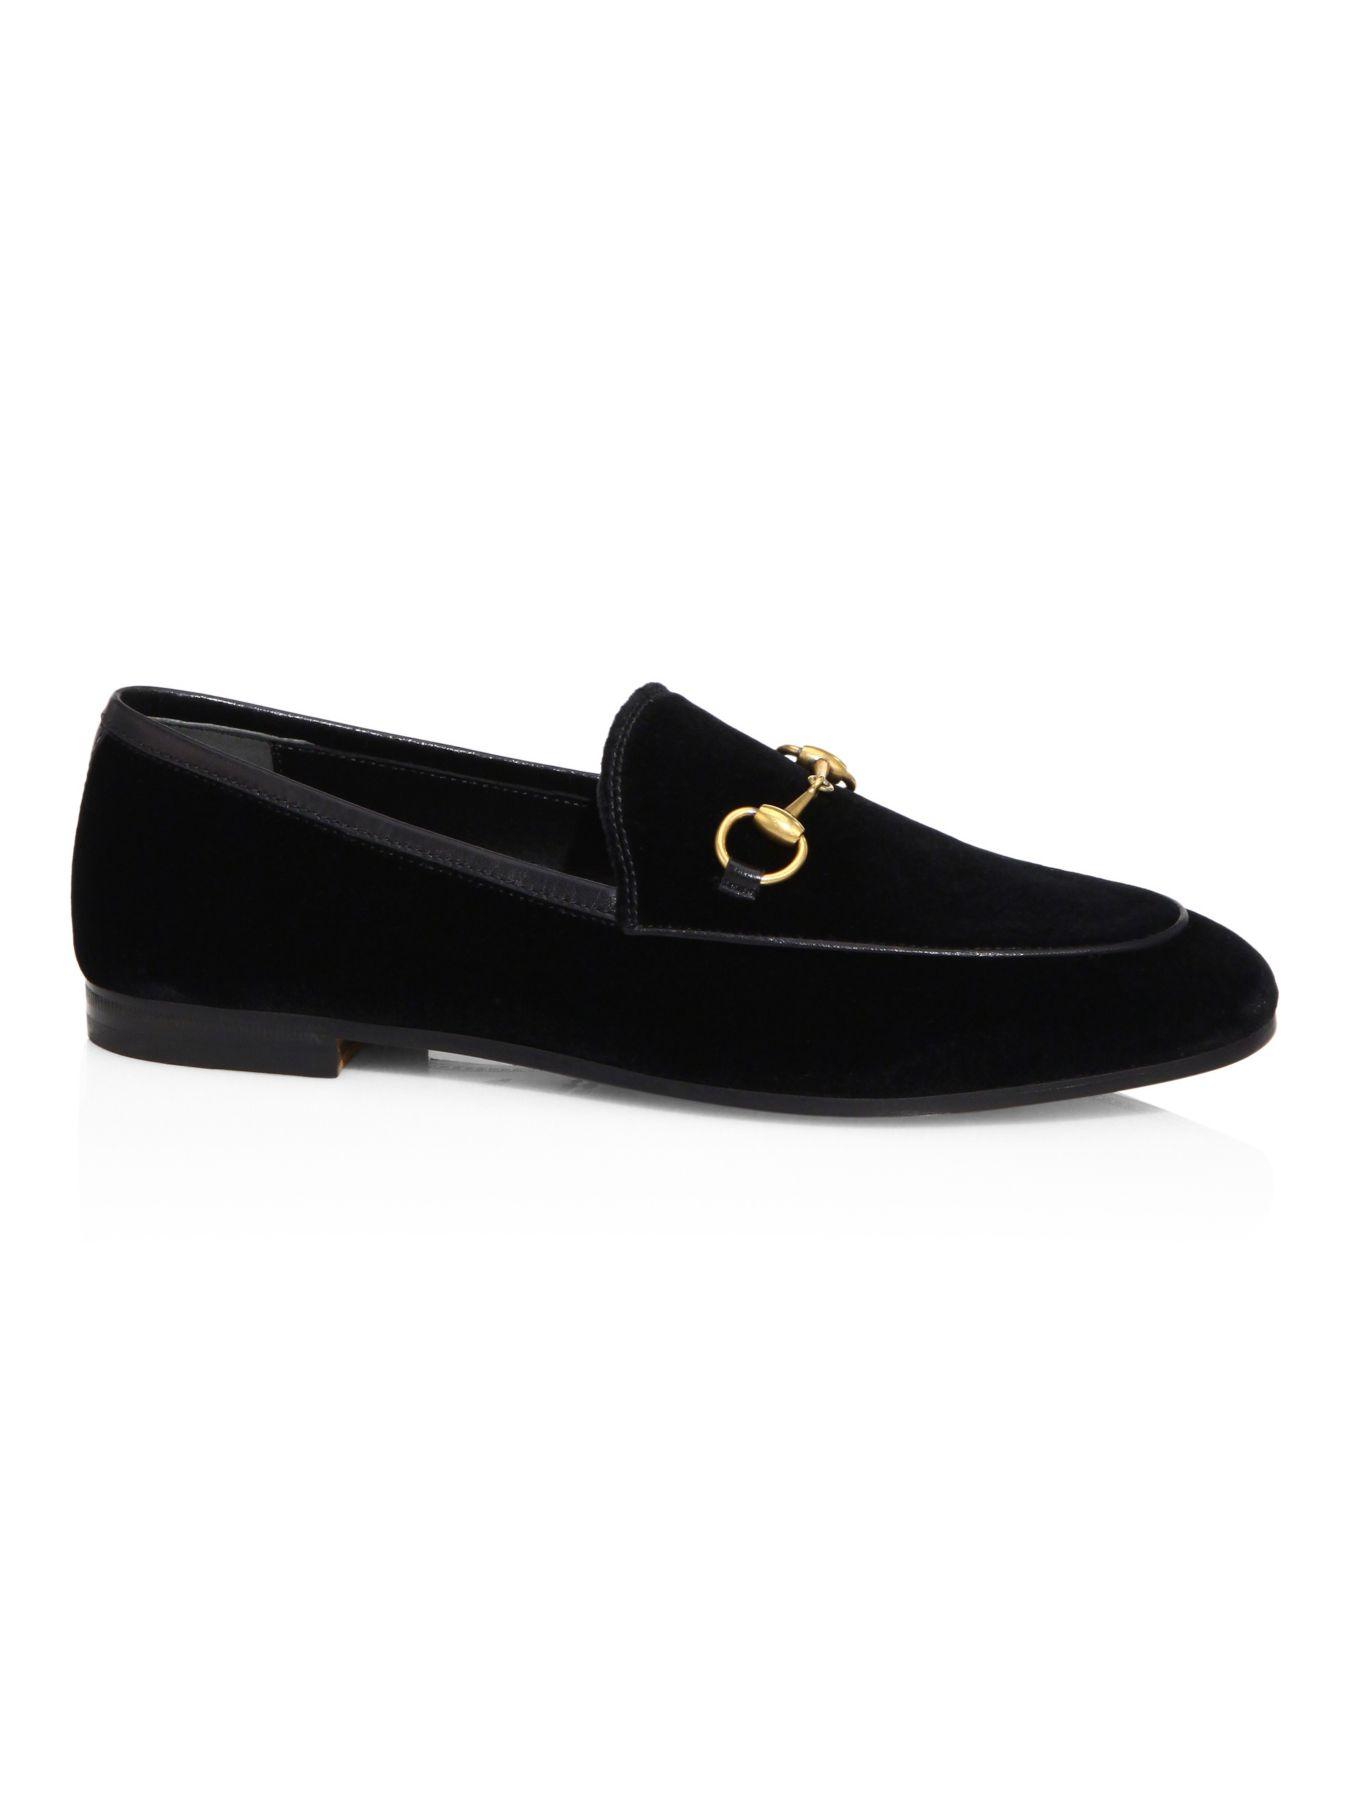 Gucci 10mm New Jordaan Velvet Loafer in Black/Gold (Black) - Lyst